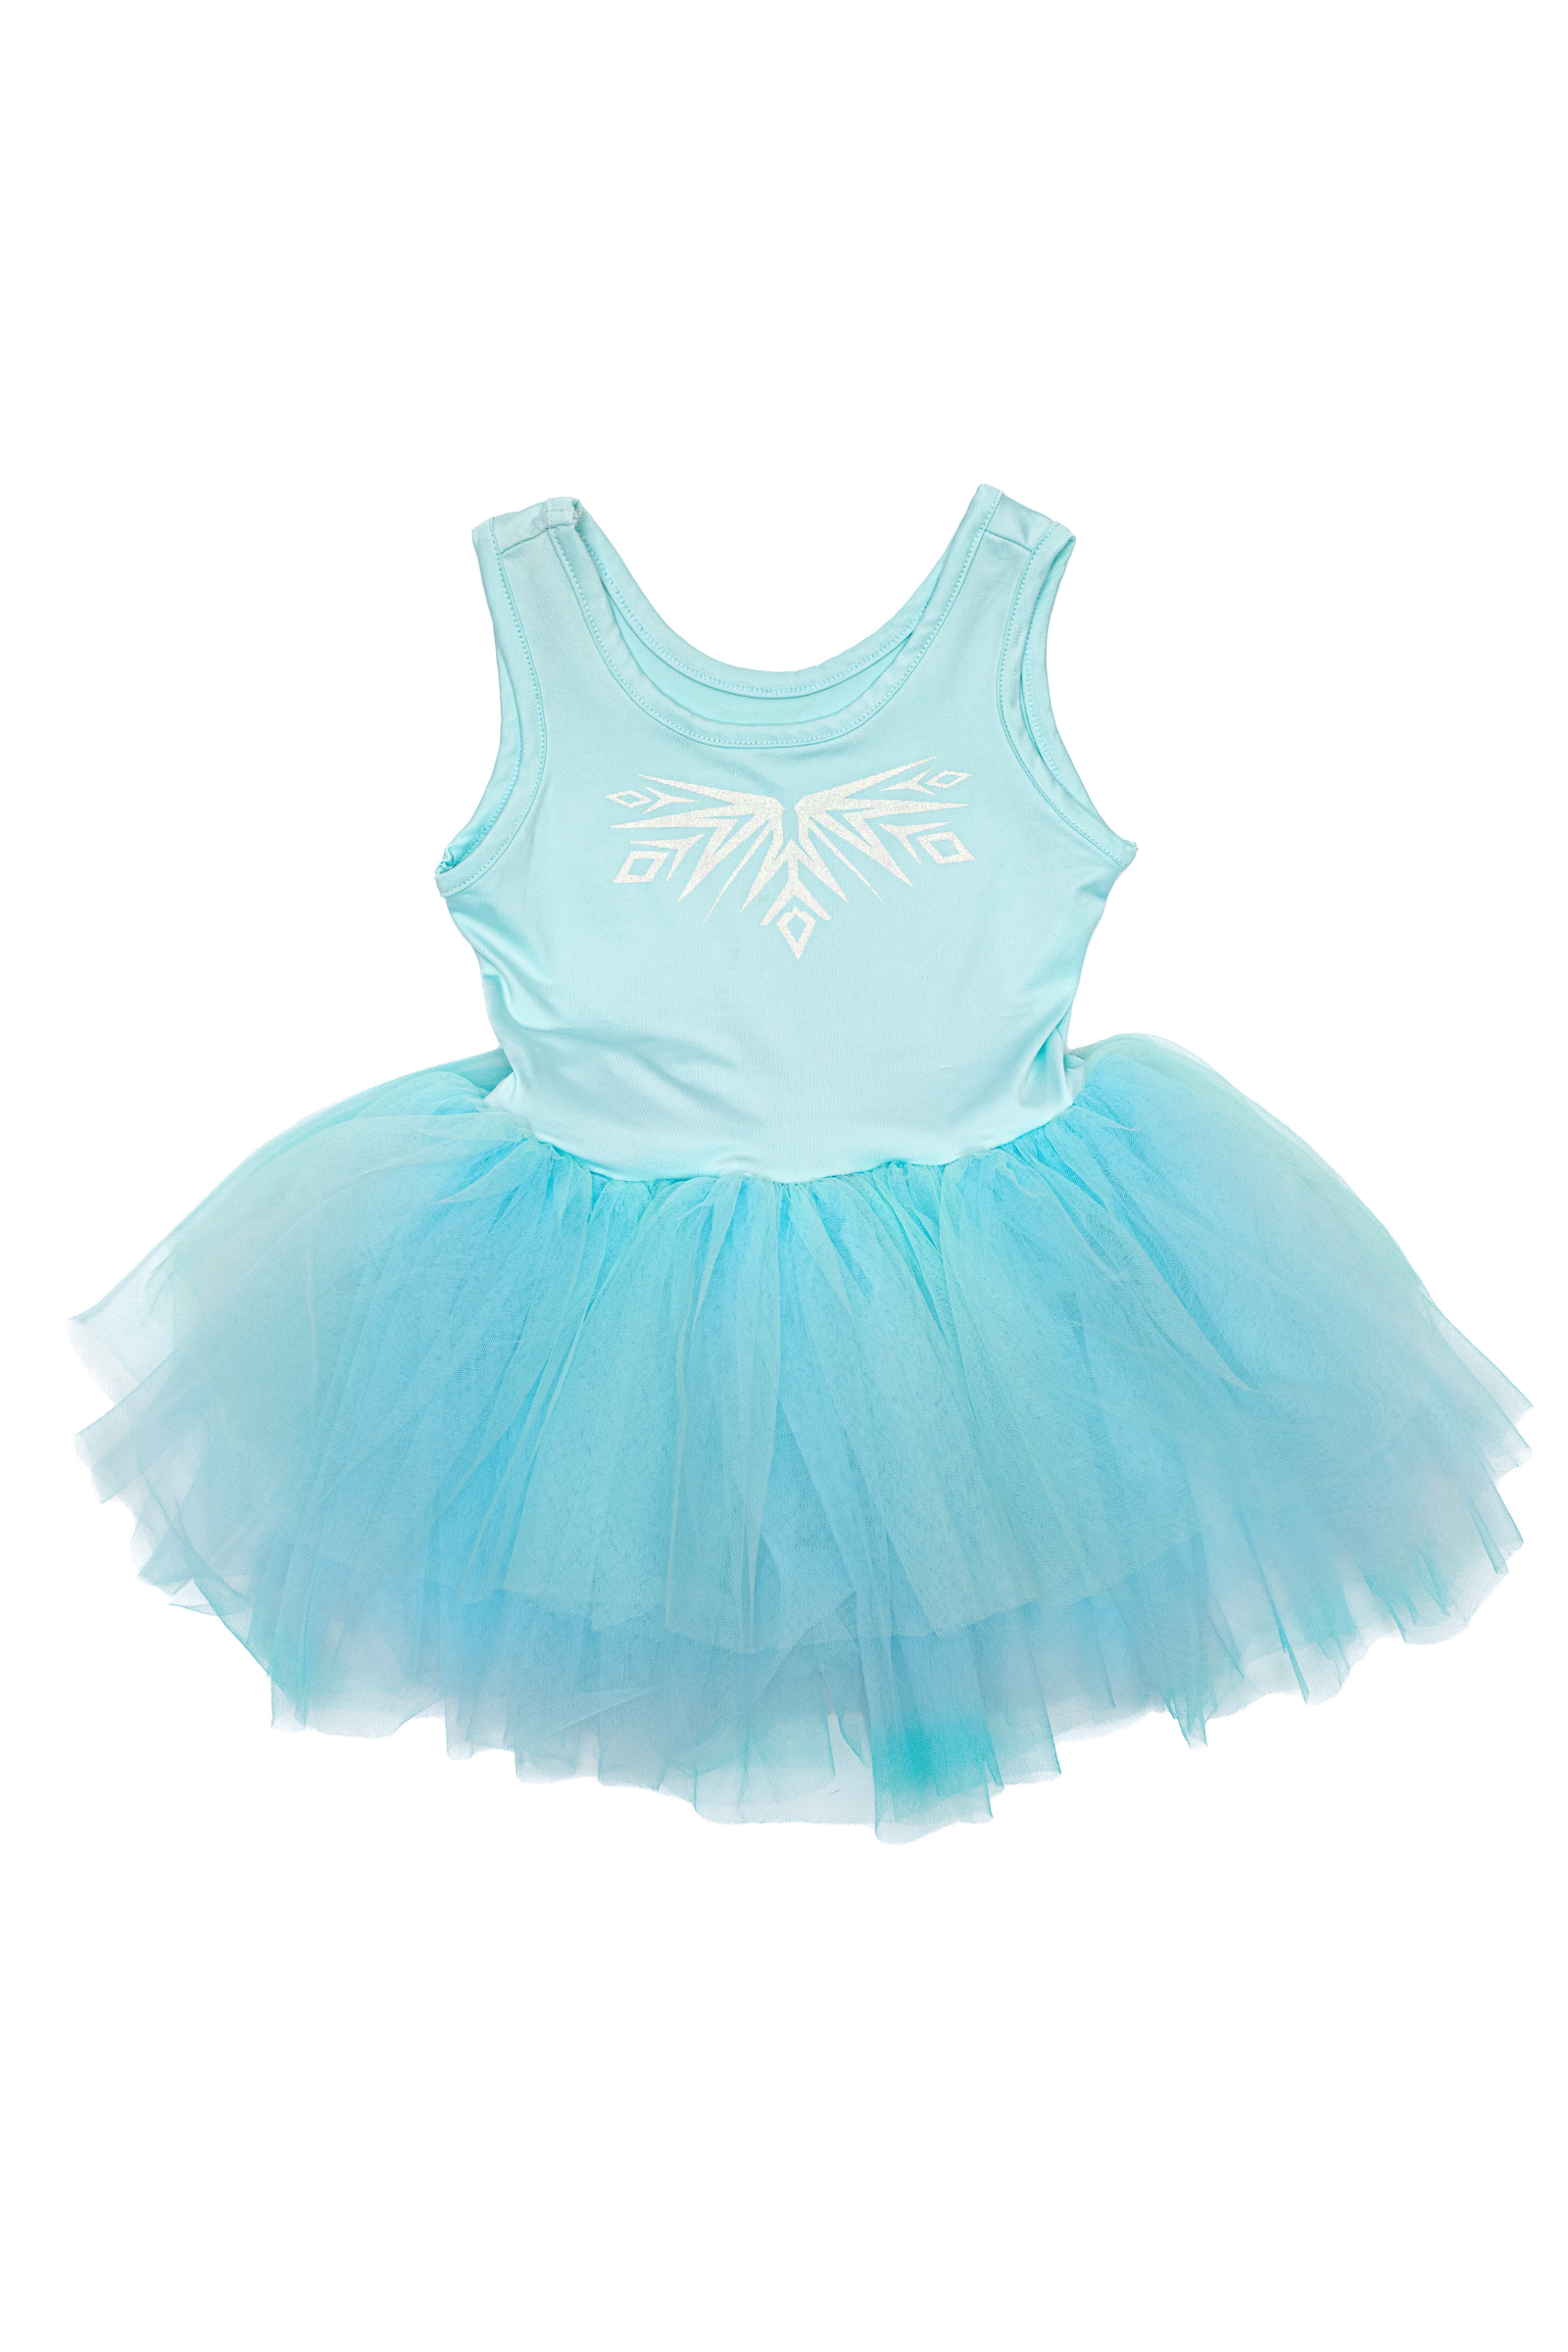 Elsa Ballet Tutu Dress